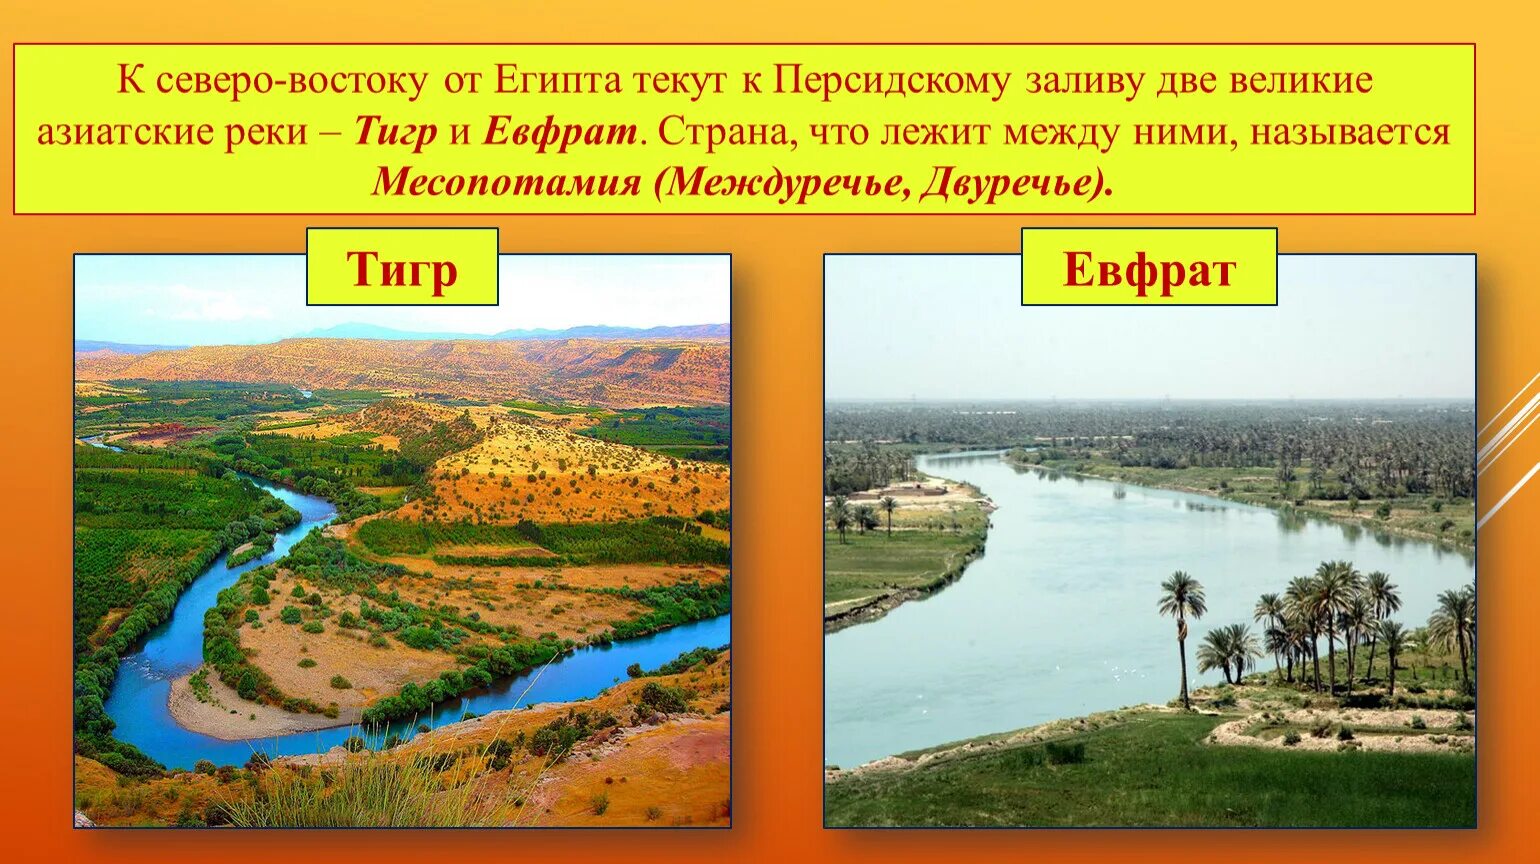 Устье рек тигра и Евфрата. Река тигр Месопотамия. Реки Месопотамии Ефрат. Река тигр в египте